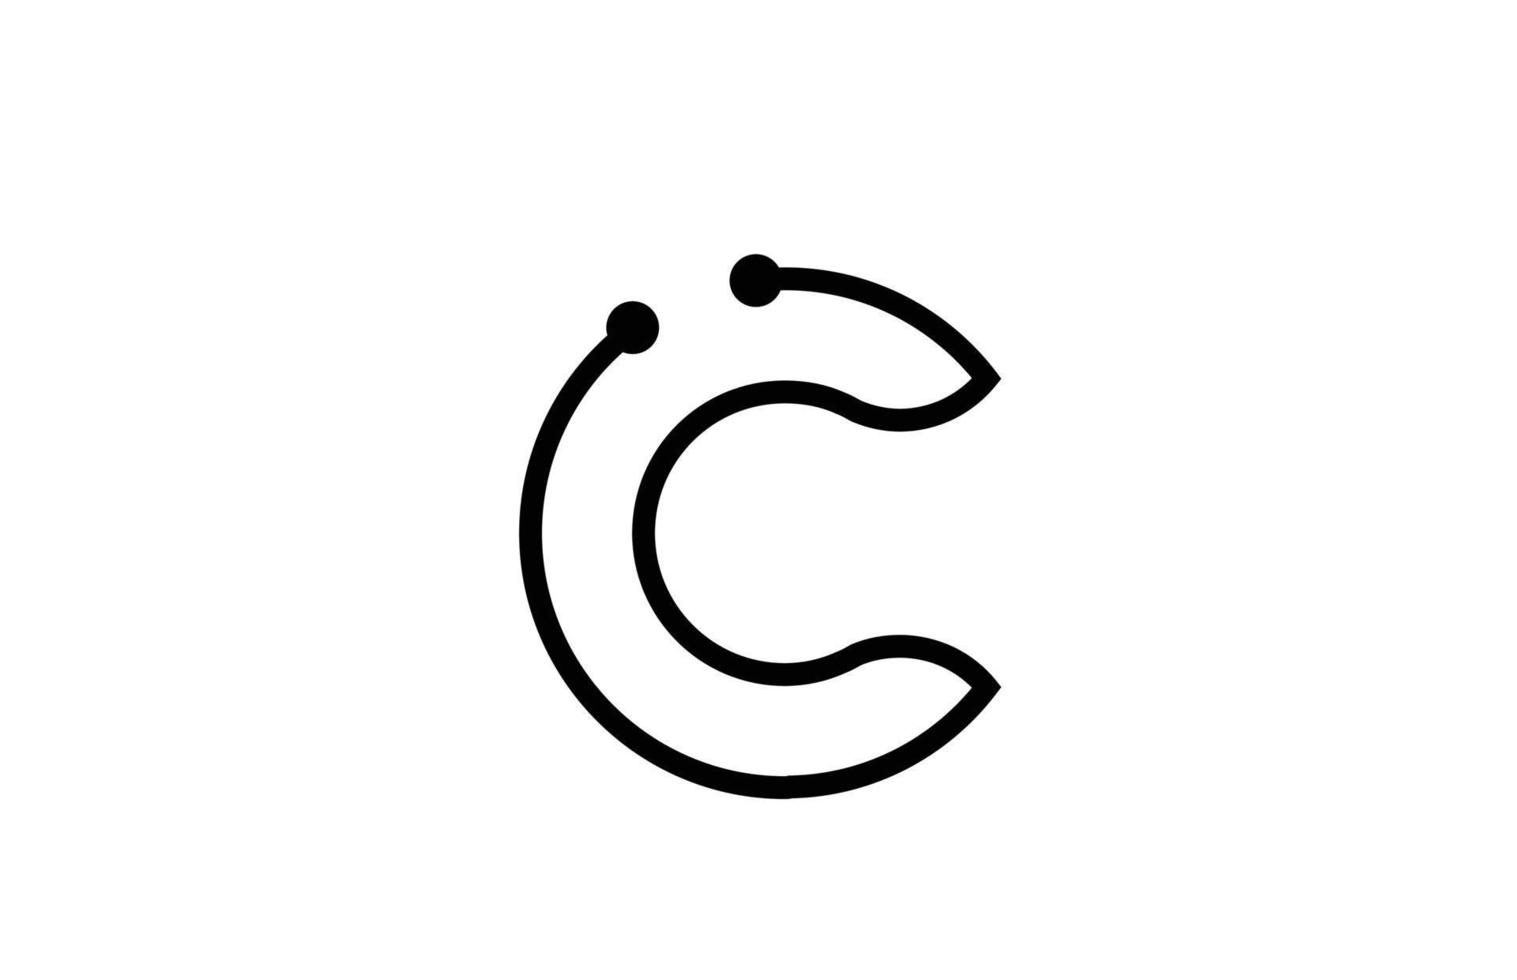 c lijn zwart-wit alfabet letter logo pictogram ontwerp met stip. creatieve sjabloon voor zaken en bedrijf vector